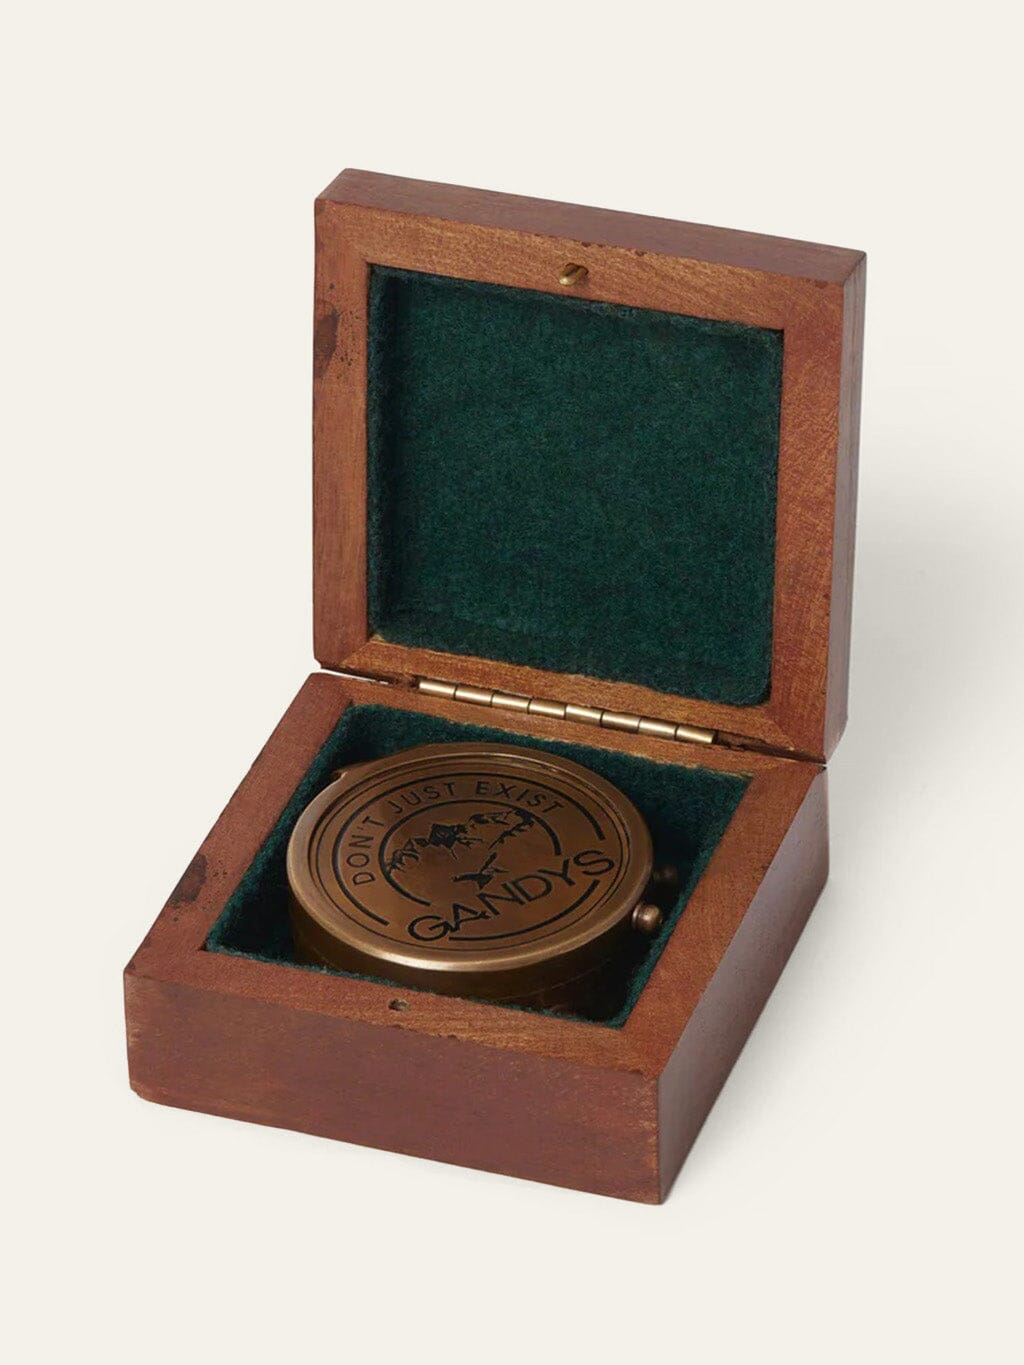 Navigator Antique Brass Compass